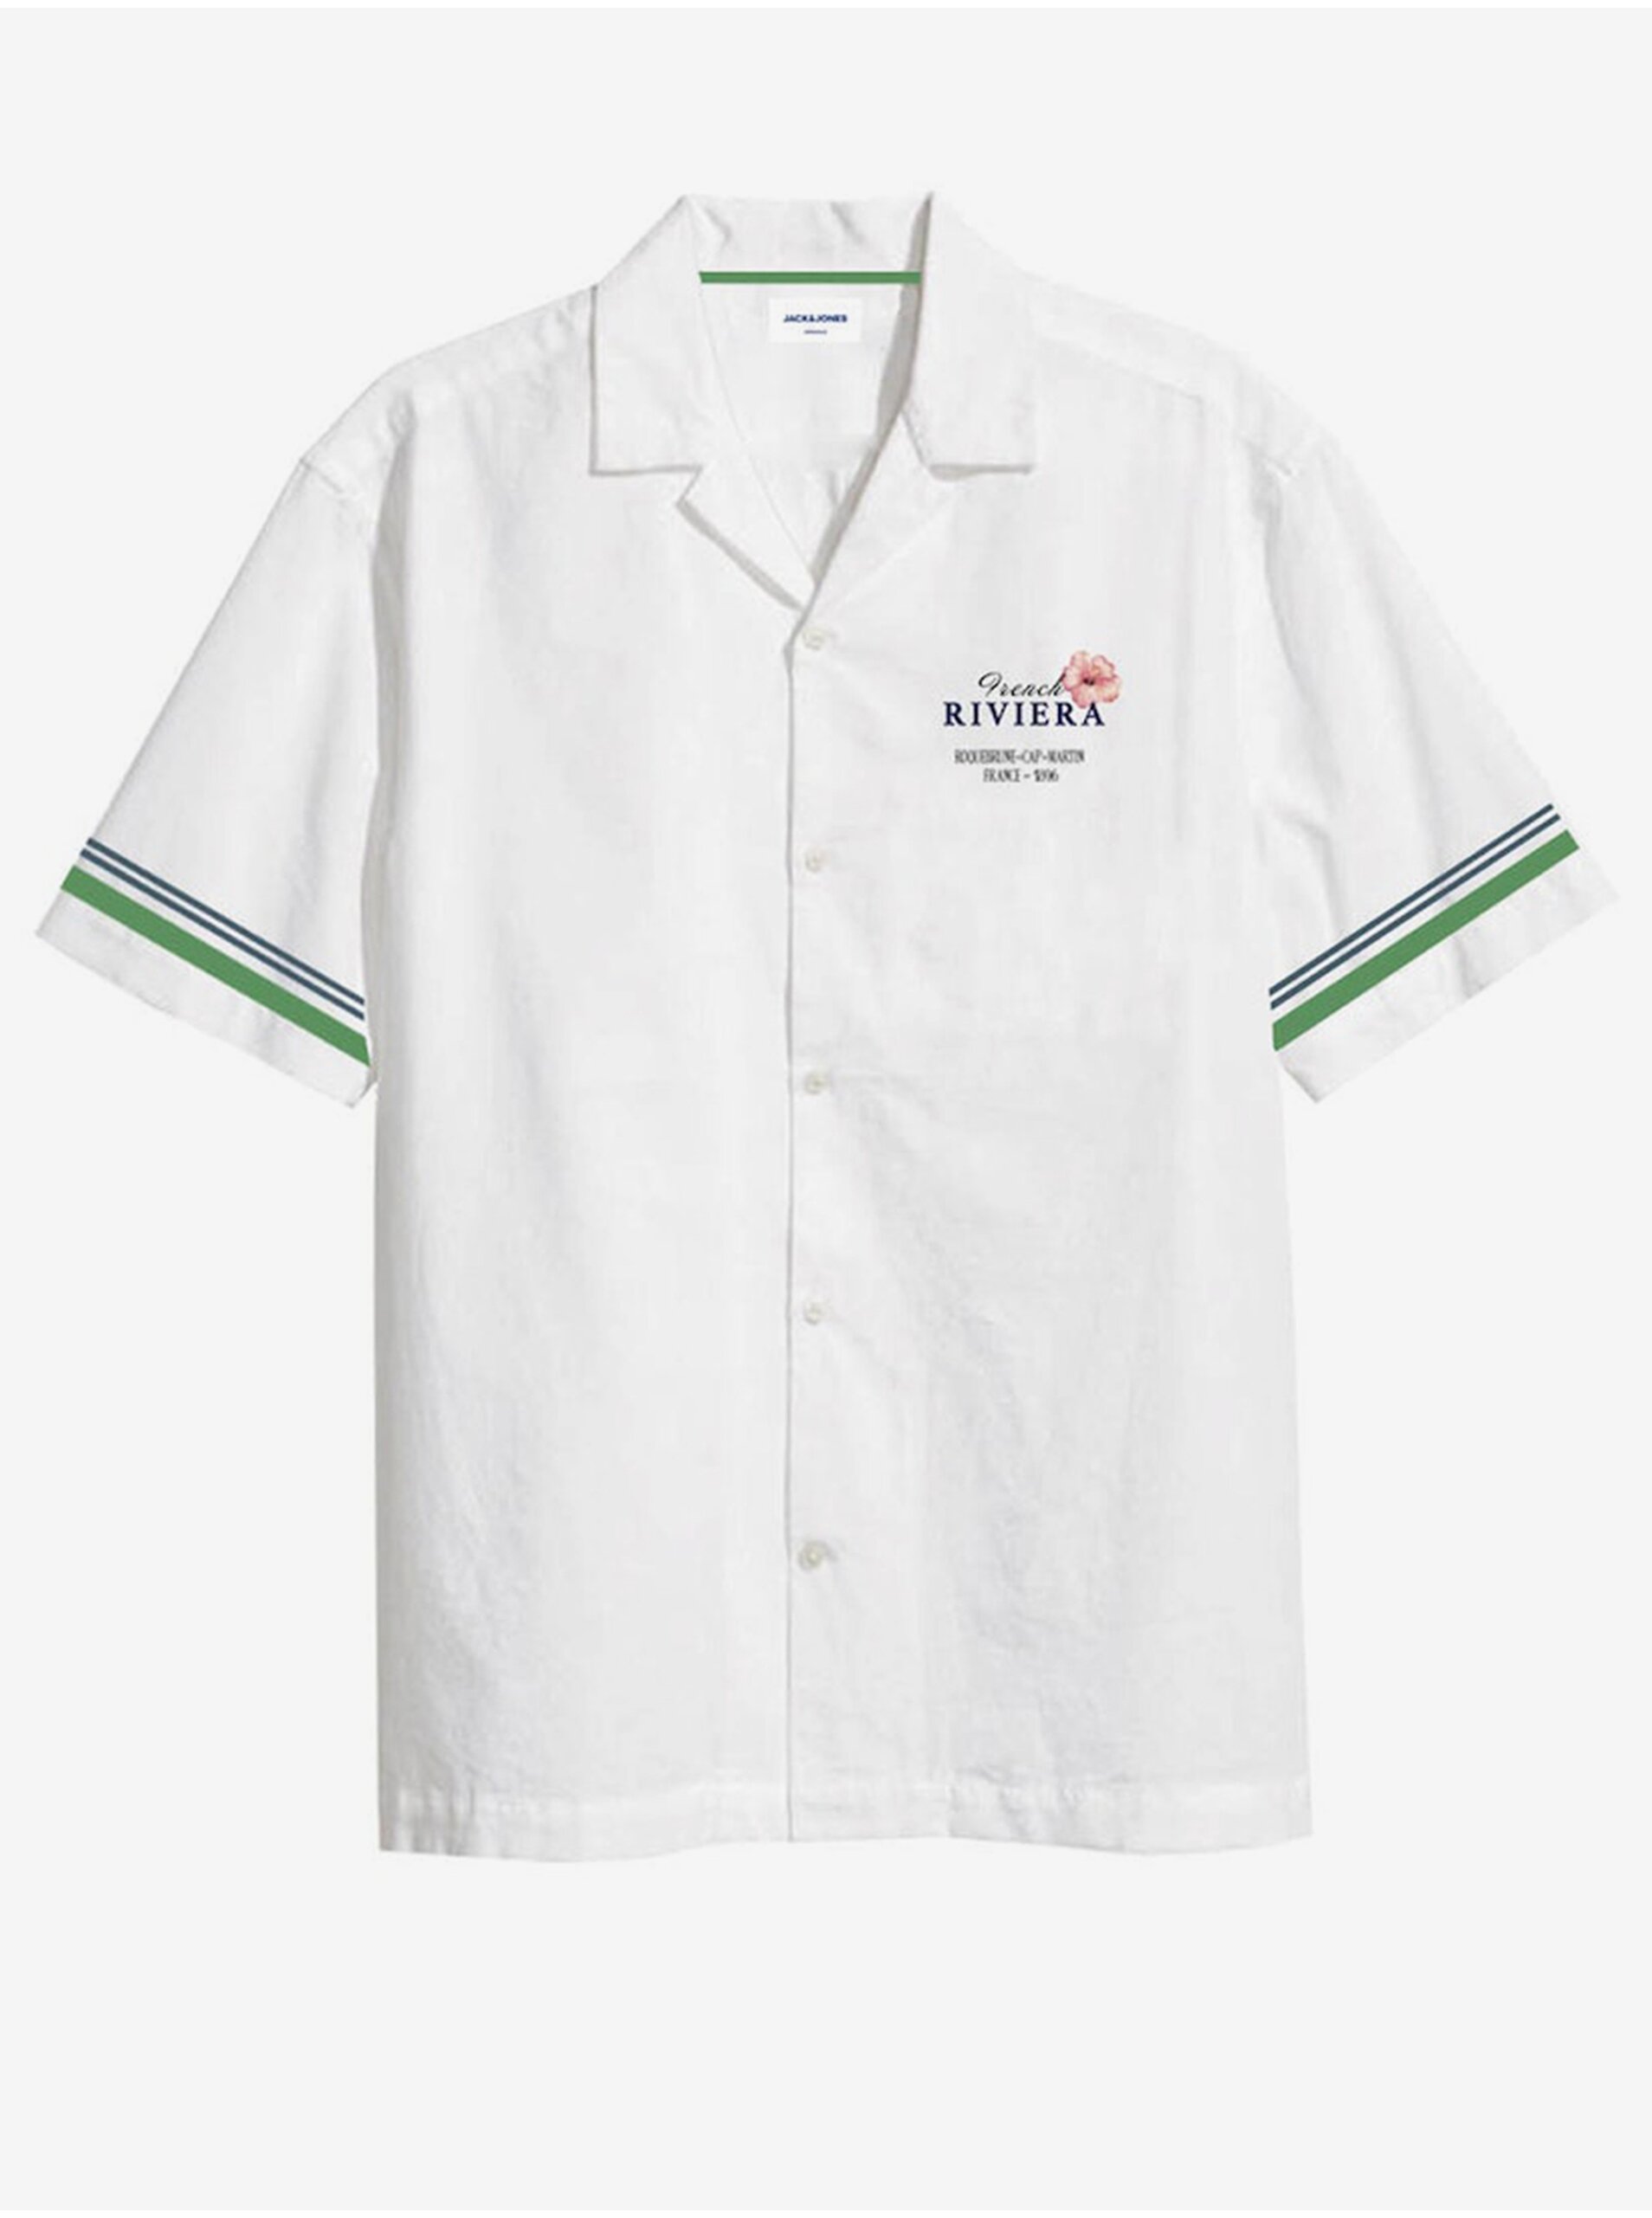 E-shop Bílá pánská košile s krátkým rukávem Jack & Jones Riviera